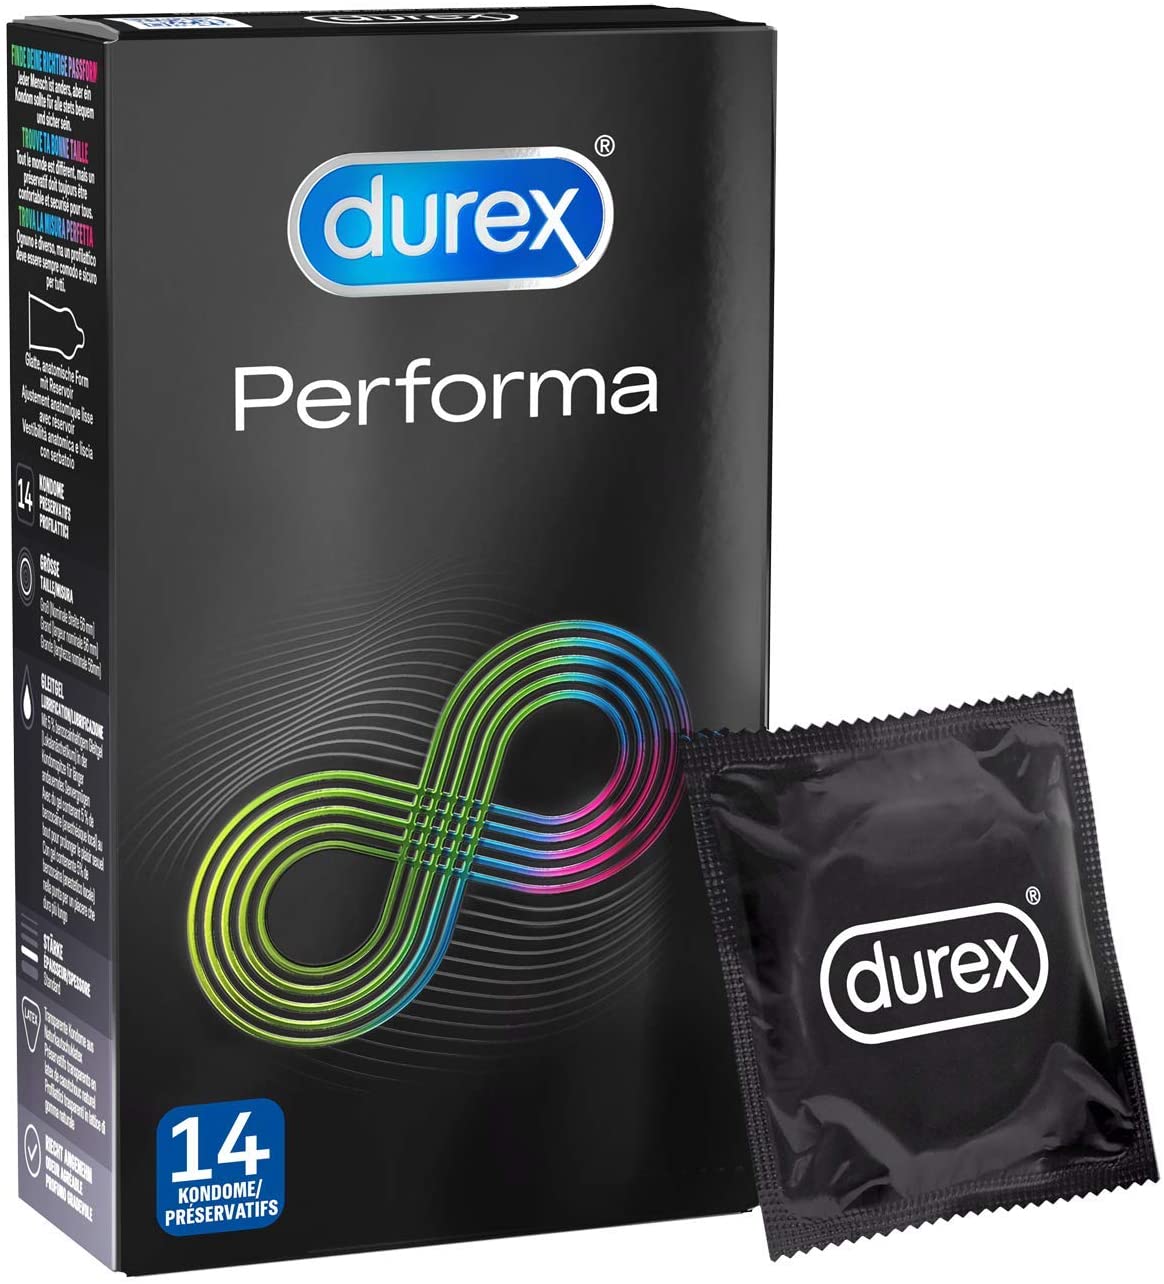 Durex Performa 14 Kondome